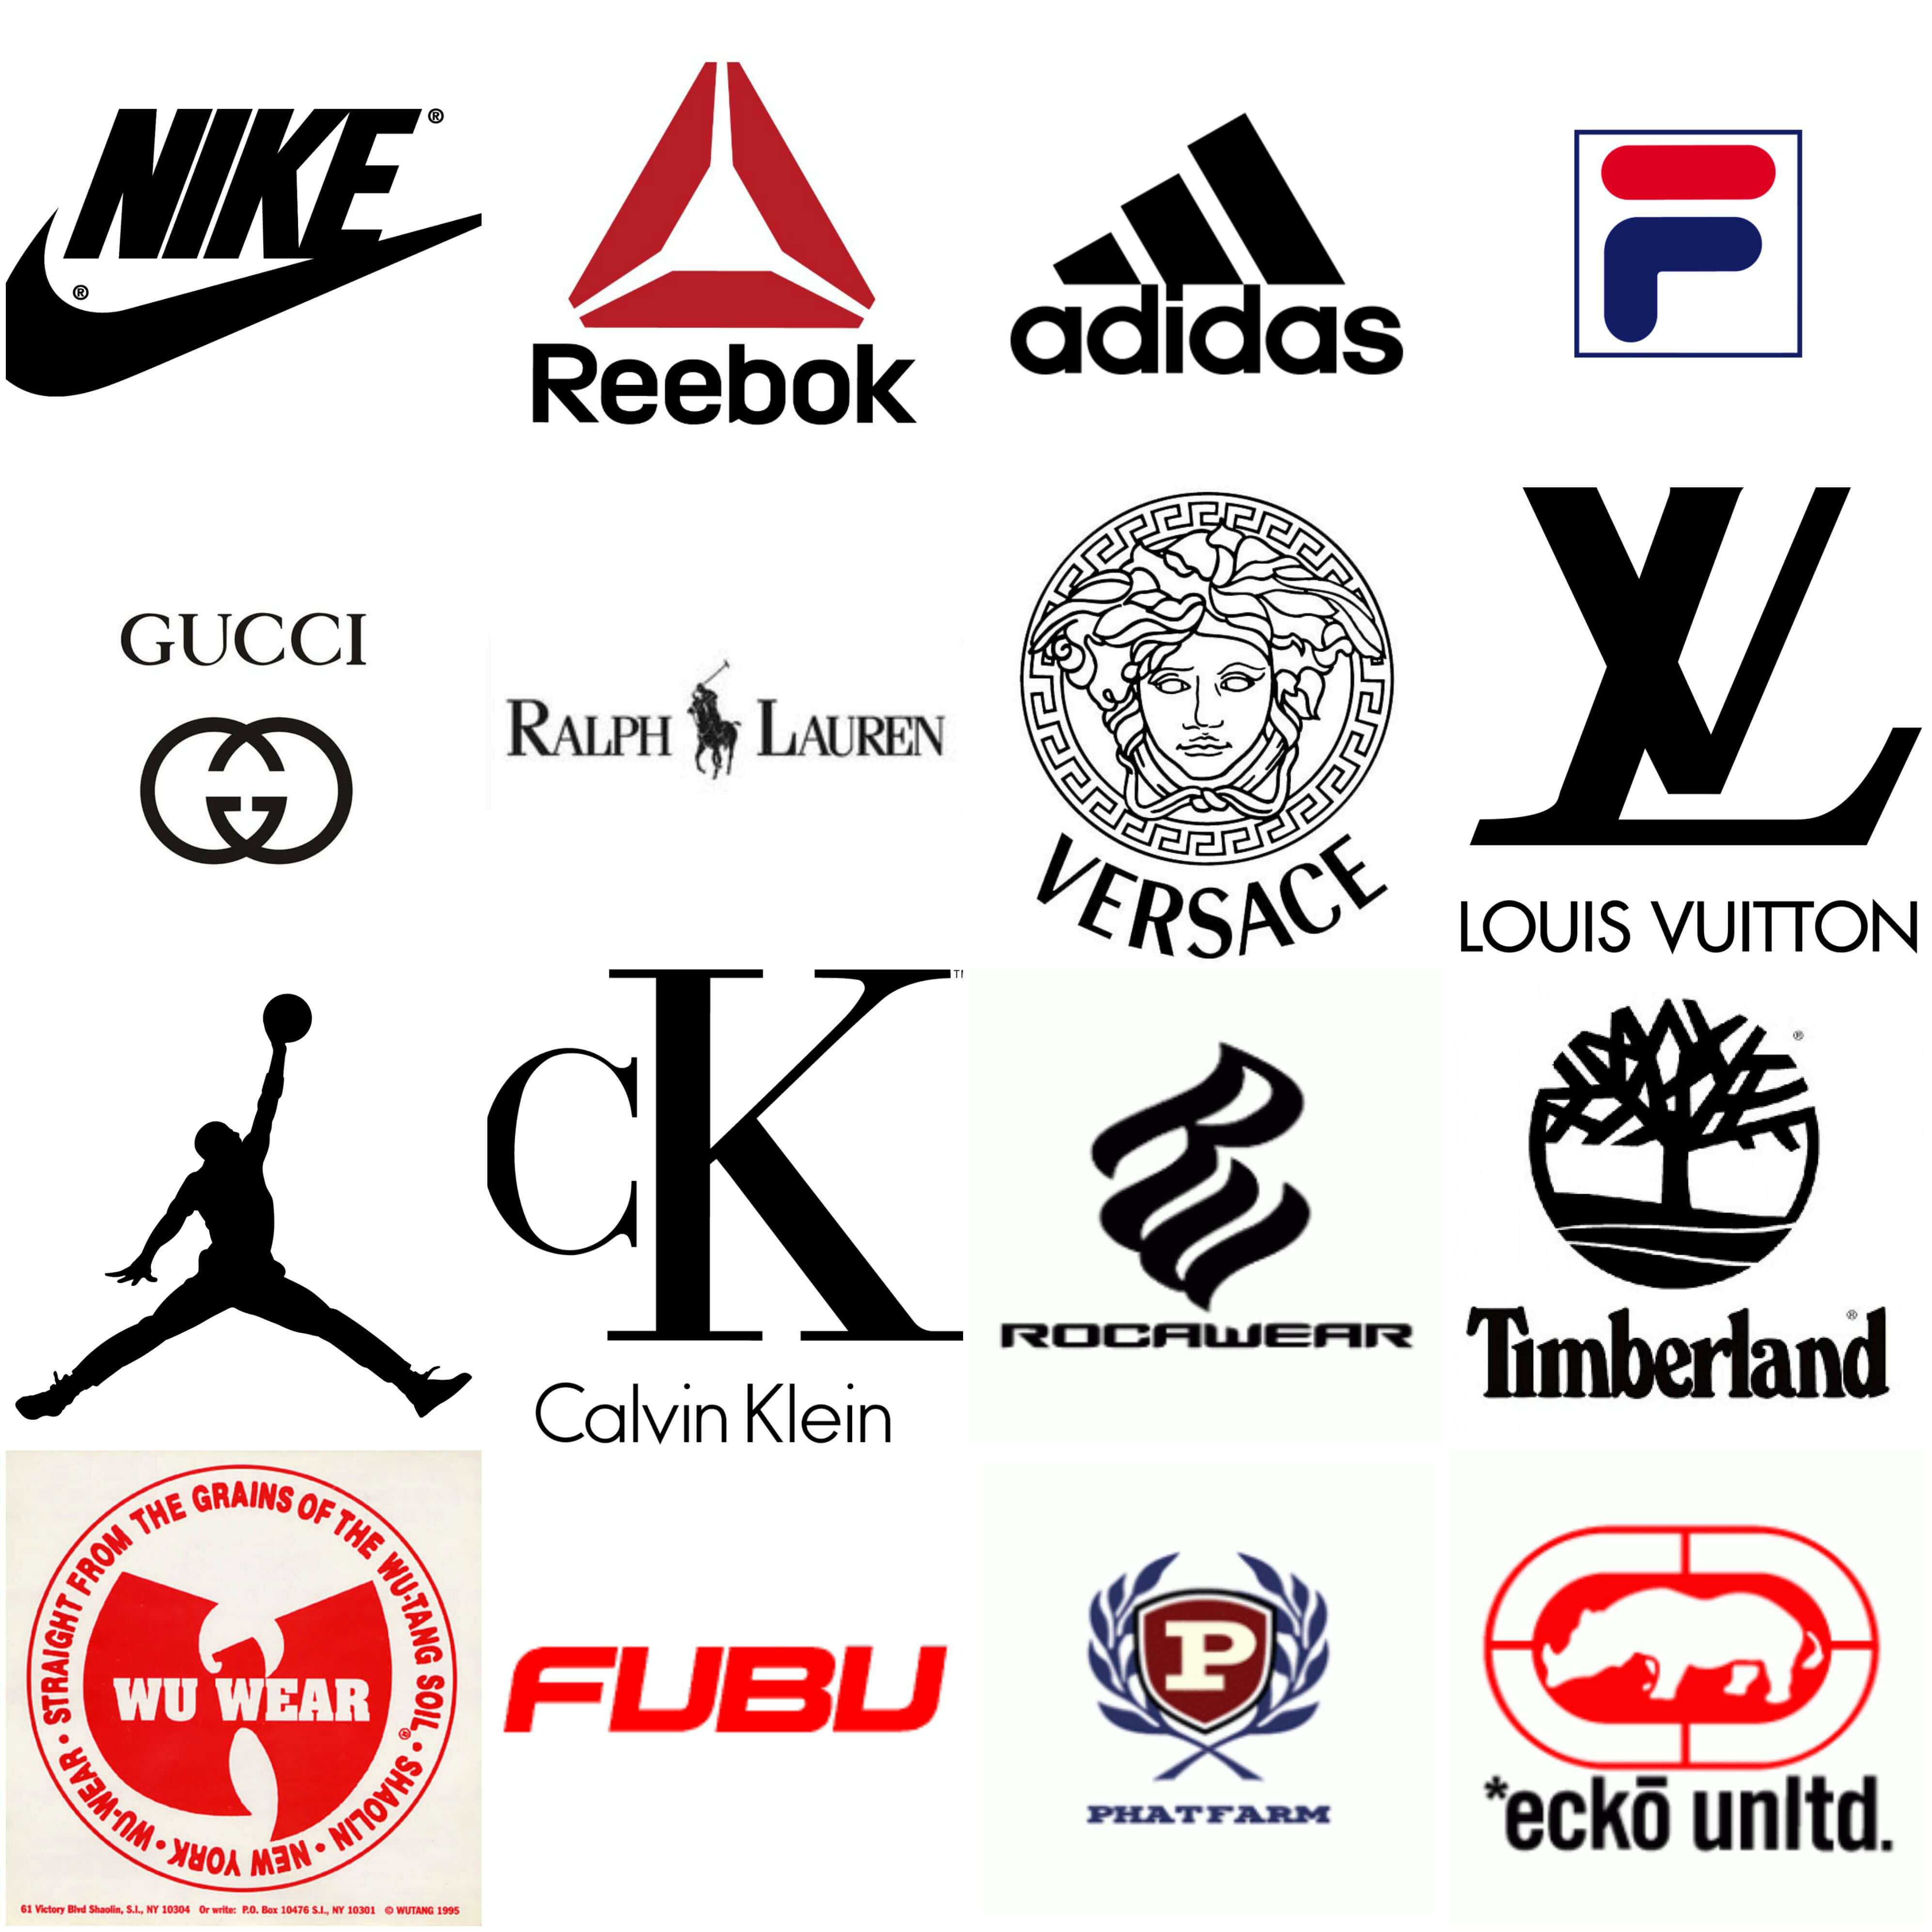 Фирма одежды и обуви. Малоизвестные бренды.